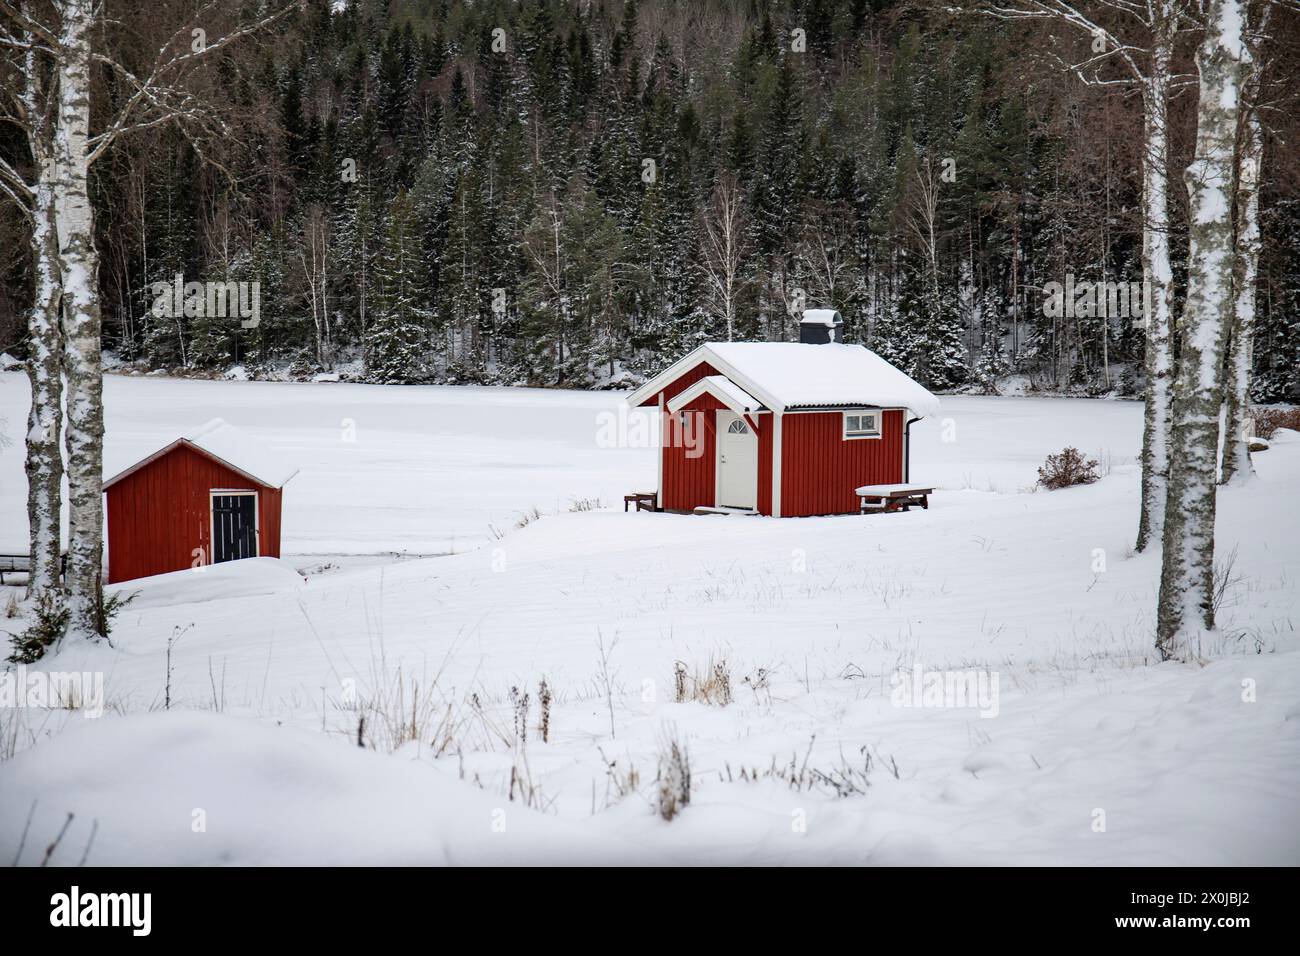 Maison suédoise rouge typique. Maison en bois dans un paysage d'hiver avec de la glace et de la neige. Petite colonie au milieu d'une forêt enneigée. Paysage photographié en Suède Banque D'Images